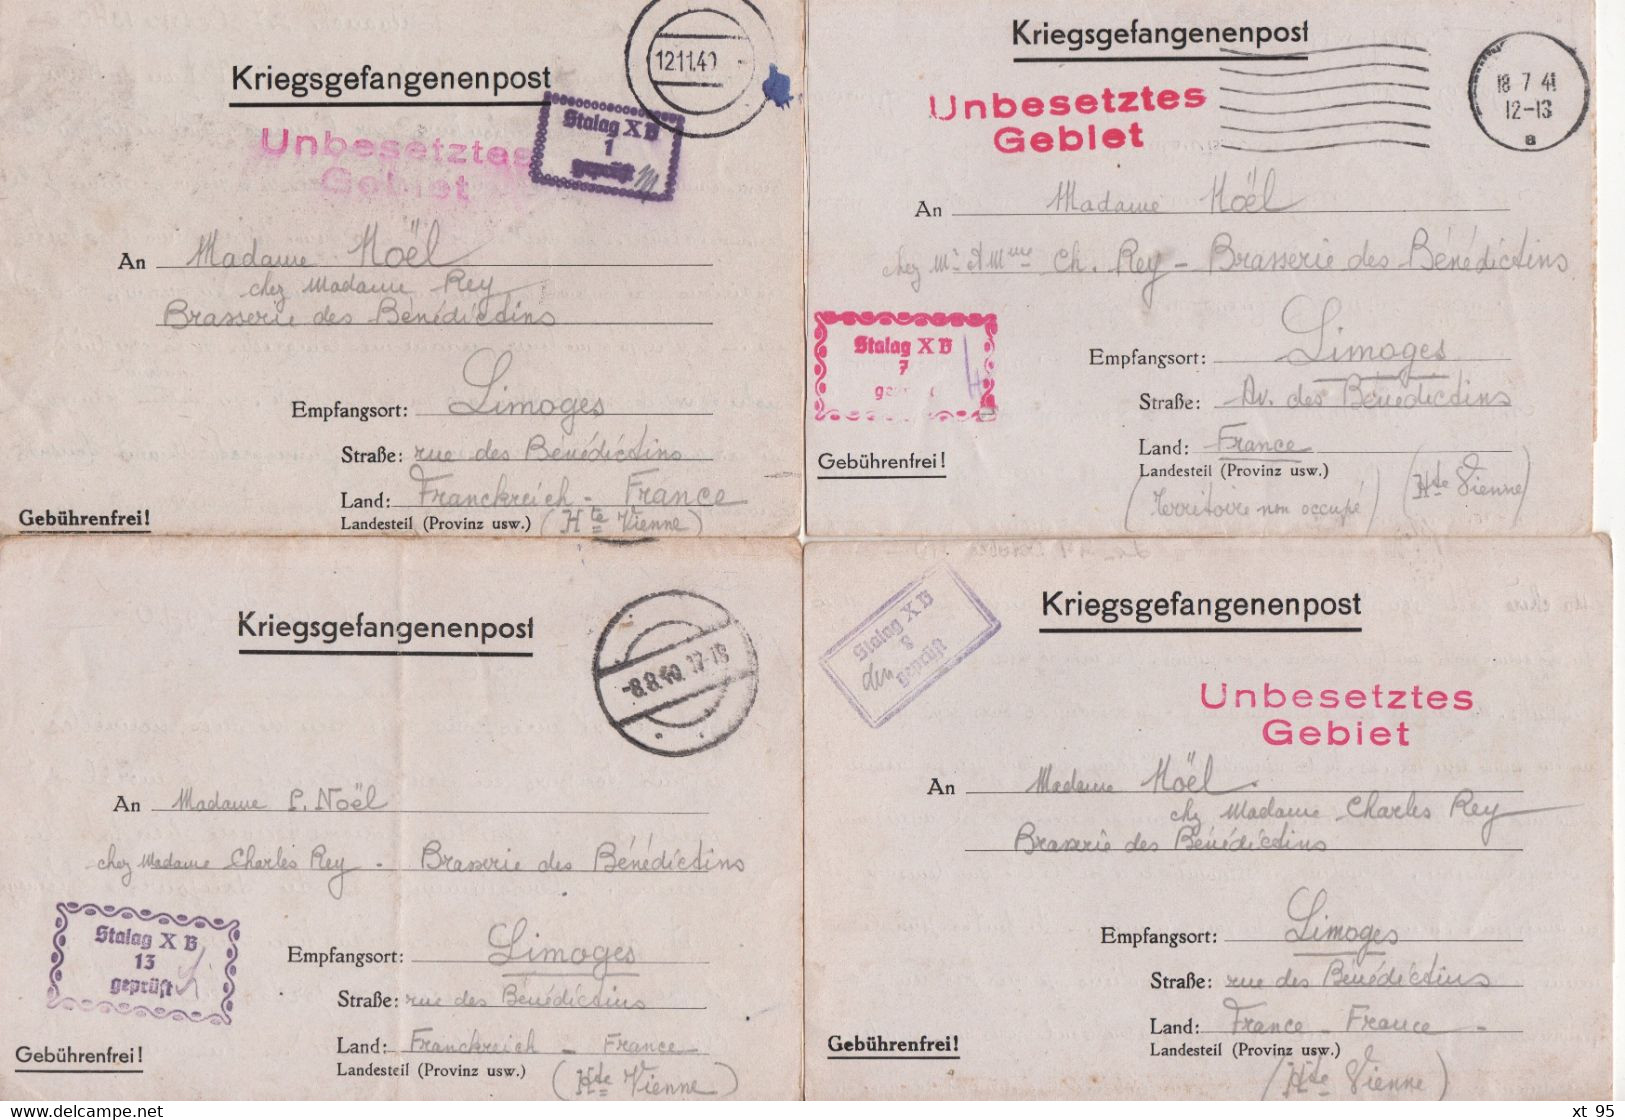 Stalag XB - Archive de 40 correspondances a destination de Limoges - prisonnier de guerre - 1940-1941